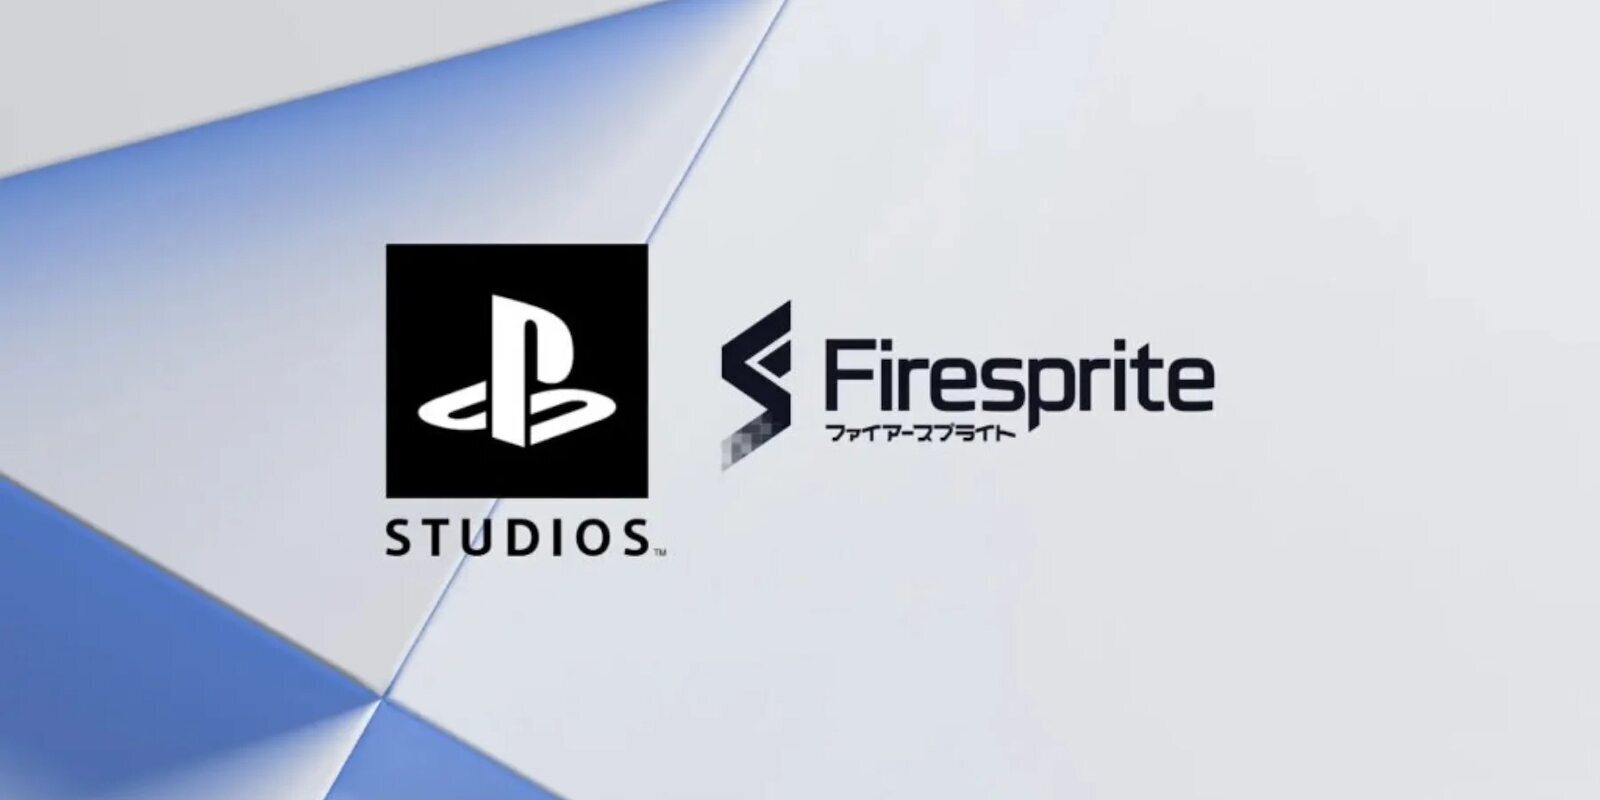 El nuevo estudio de Sony, Firesprite, está creando un juego de terror triple A con Unreal Engine 5